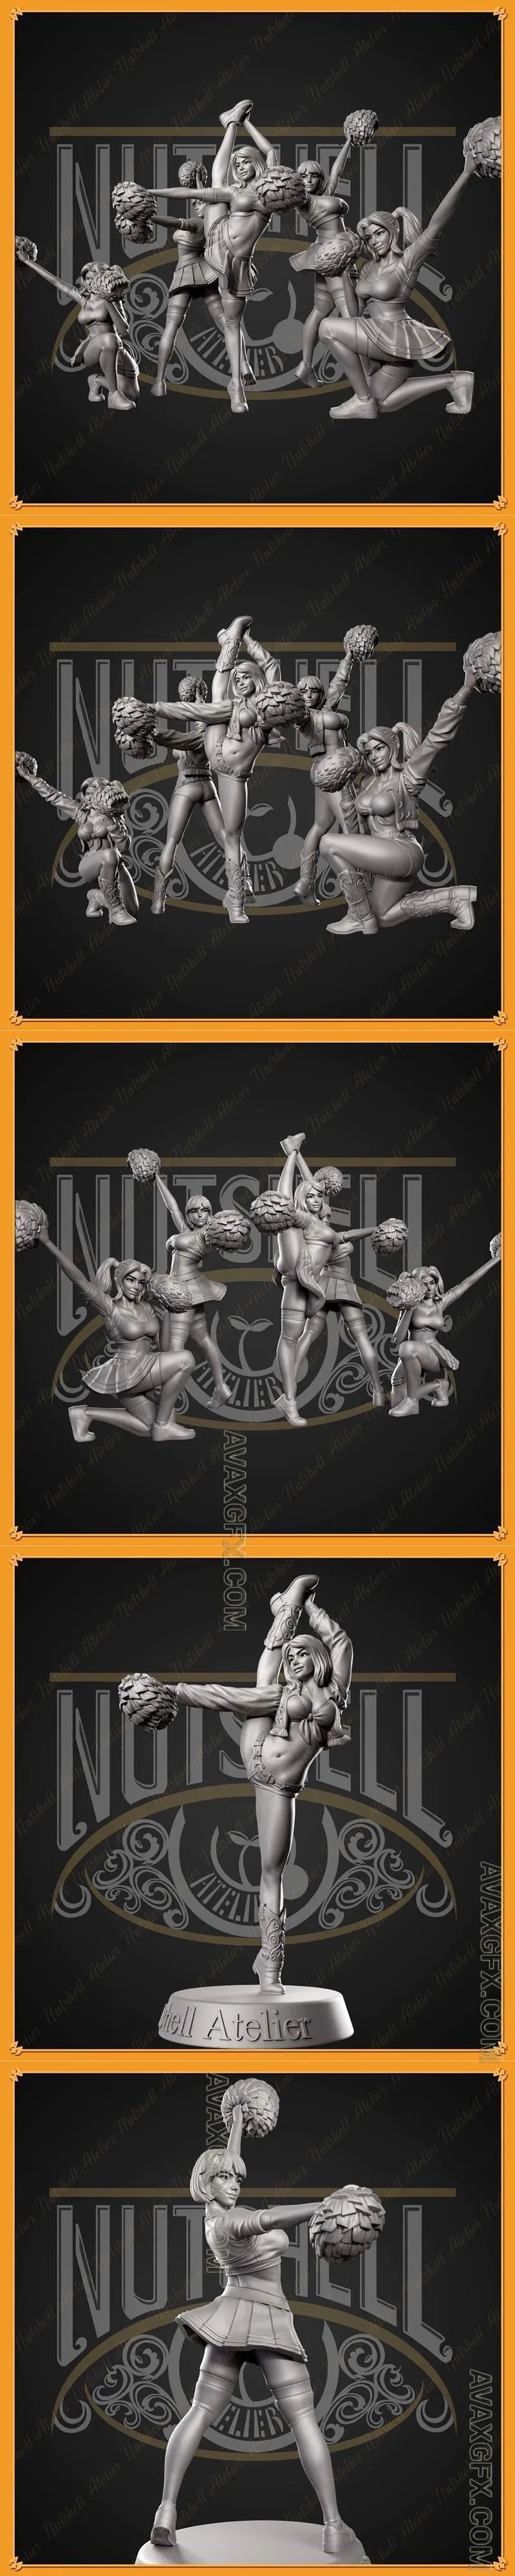 Nutshell Atelier - Cheerleaders - STL 3D Model